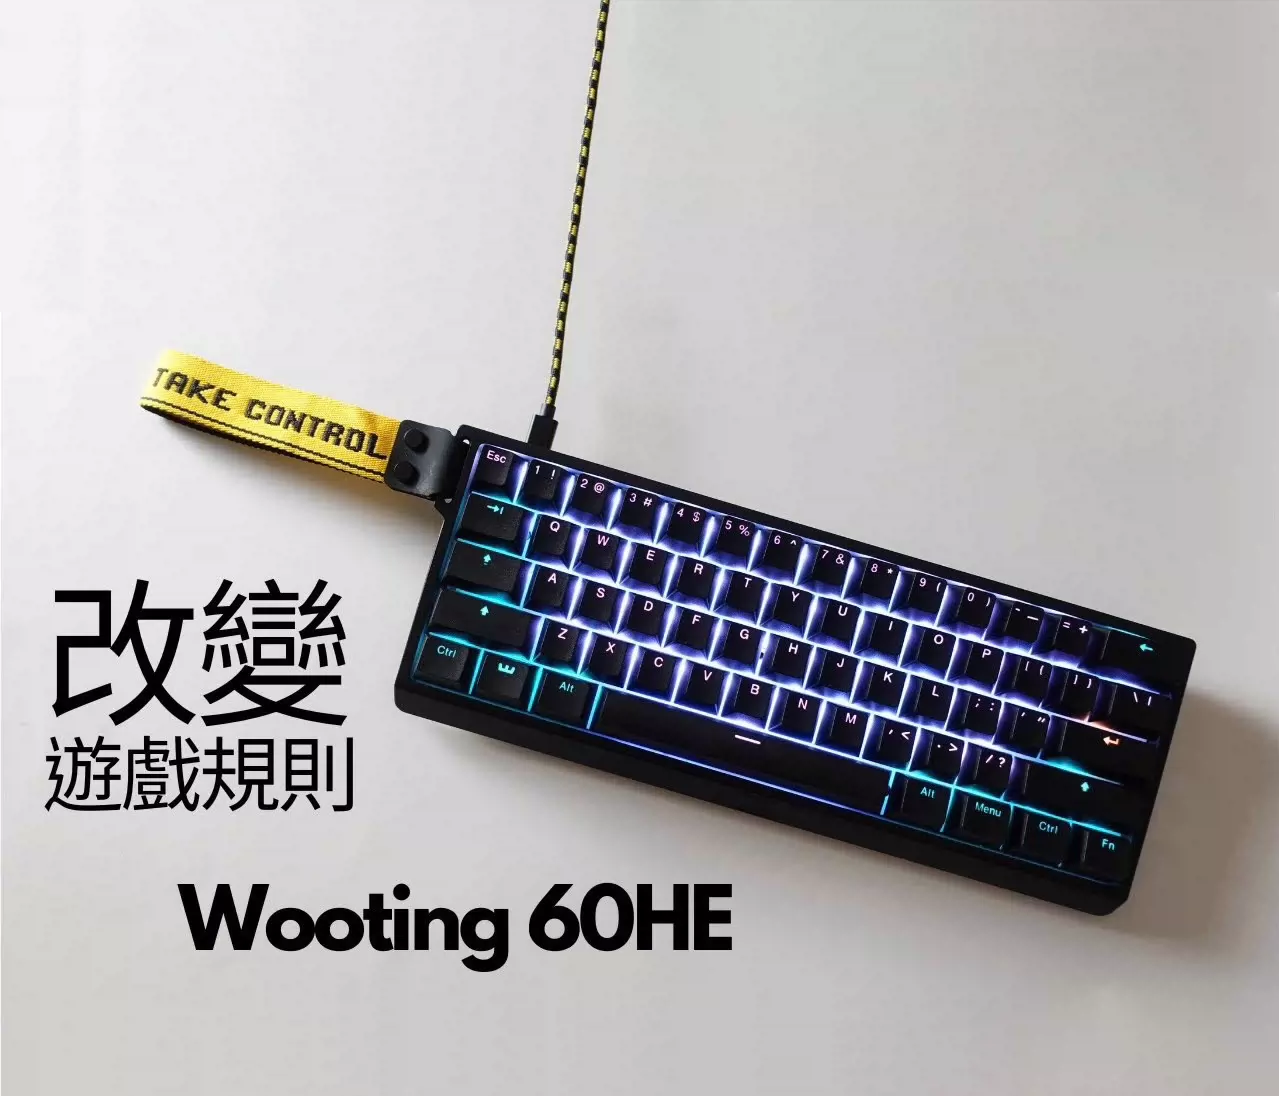 最低価格の Wooting60HE 未開封 USキーボード 新品 キーボード 